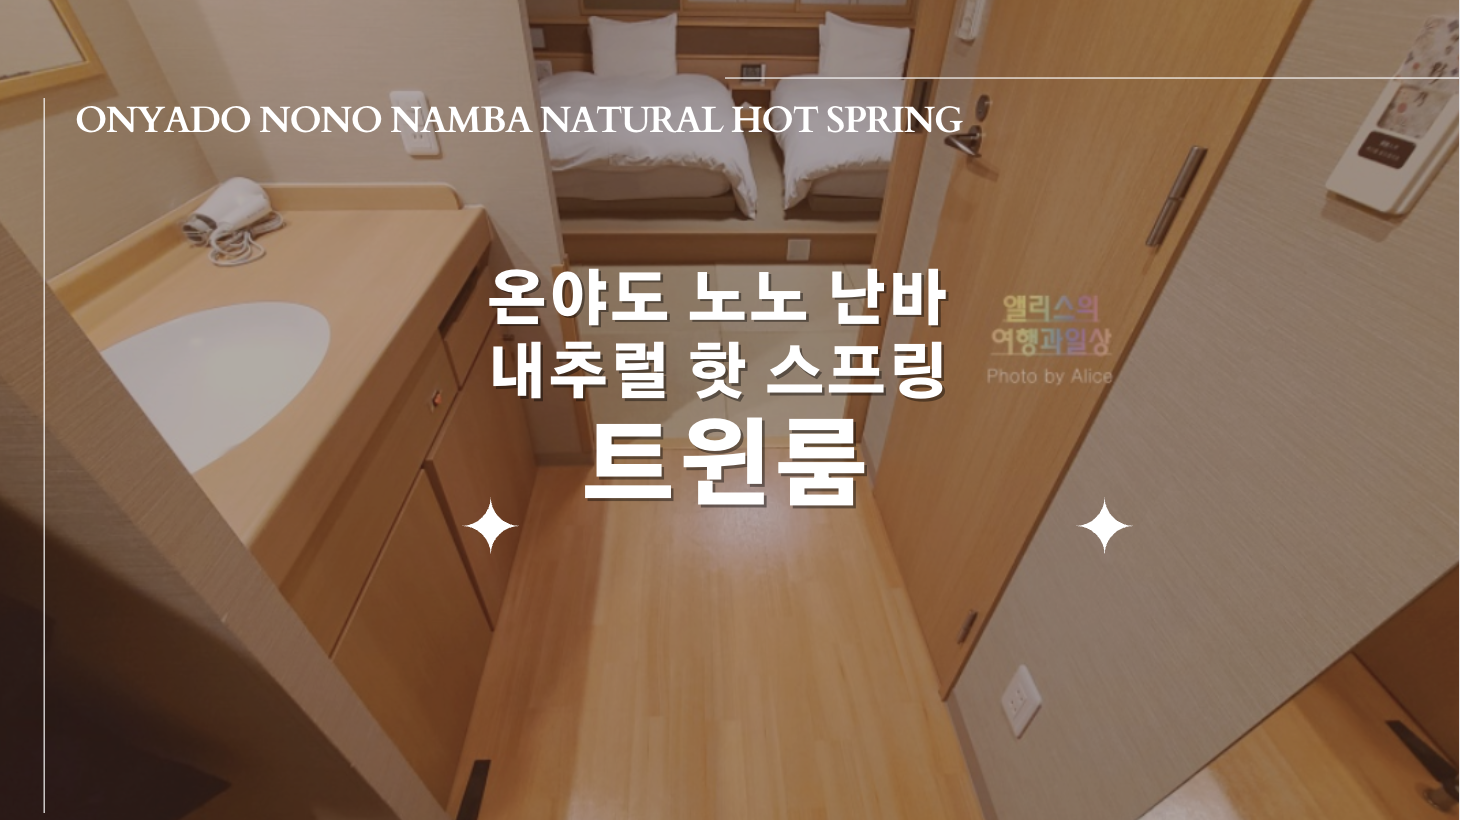 Onyado Nono Namba Natural Hot Spring